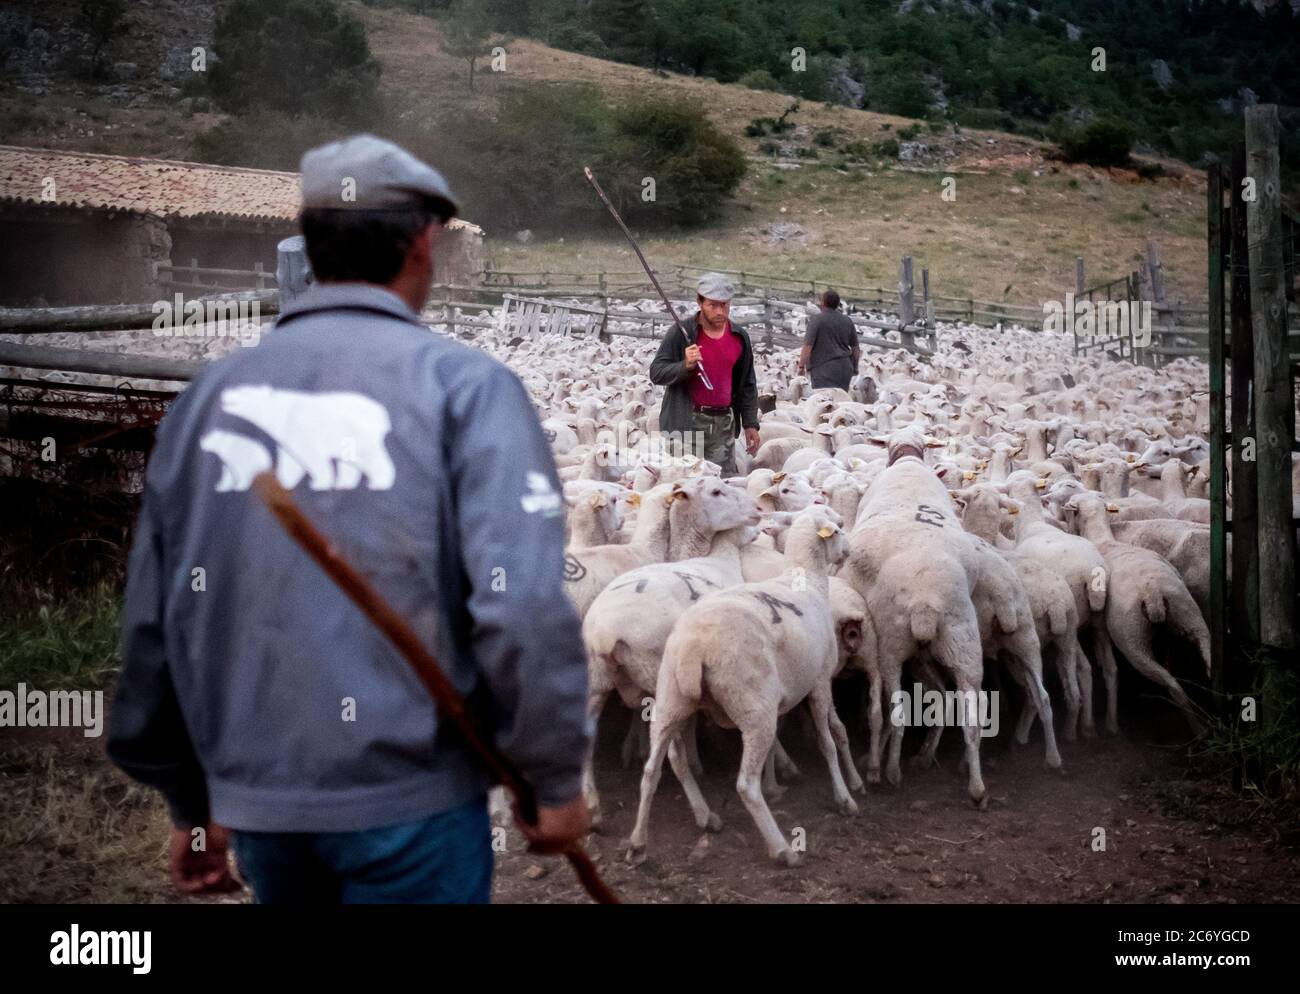 Enrique, Alejandro et Juan enfermer les moutons dans un tribunal à leur arrivée à leur destination dans les montagnes nier à Guadalaviar. Date : 28-06-2016. Photo: Xabier Mikel Laburu. Banque D'Images